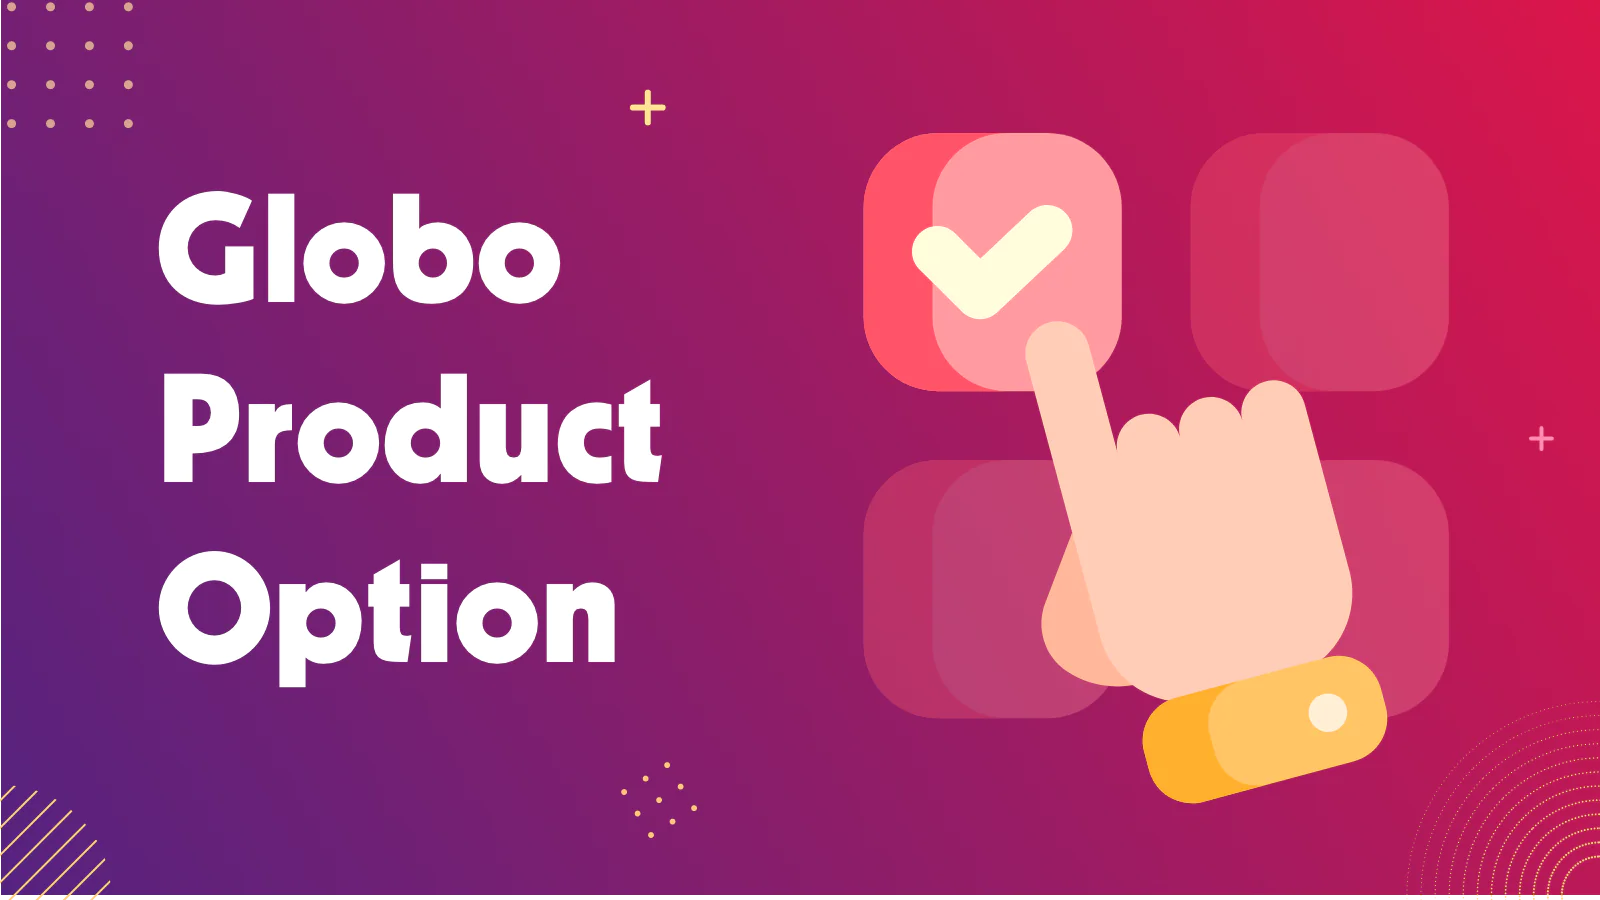 Globo Product Options